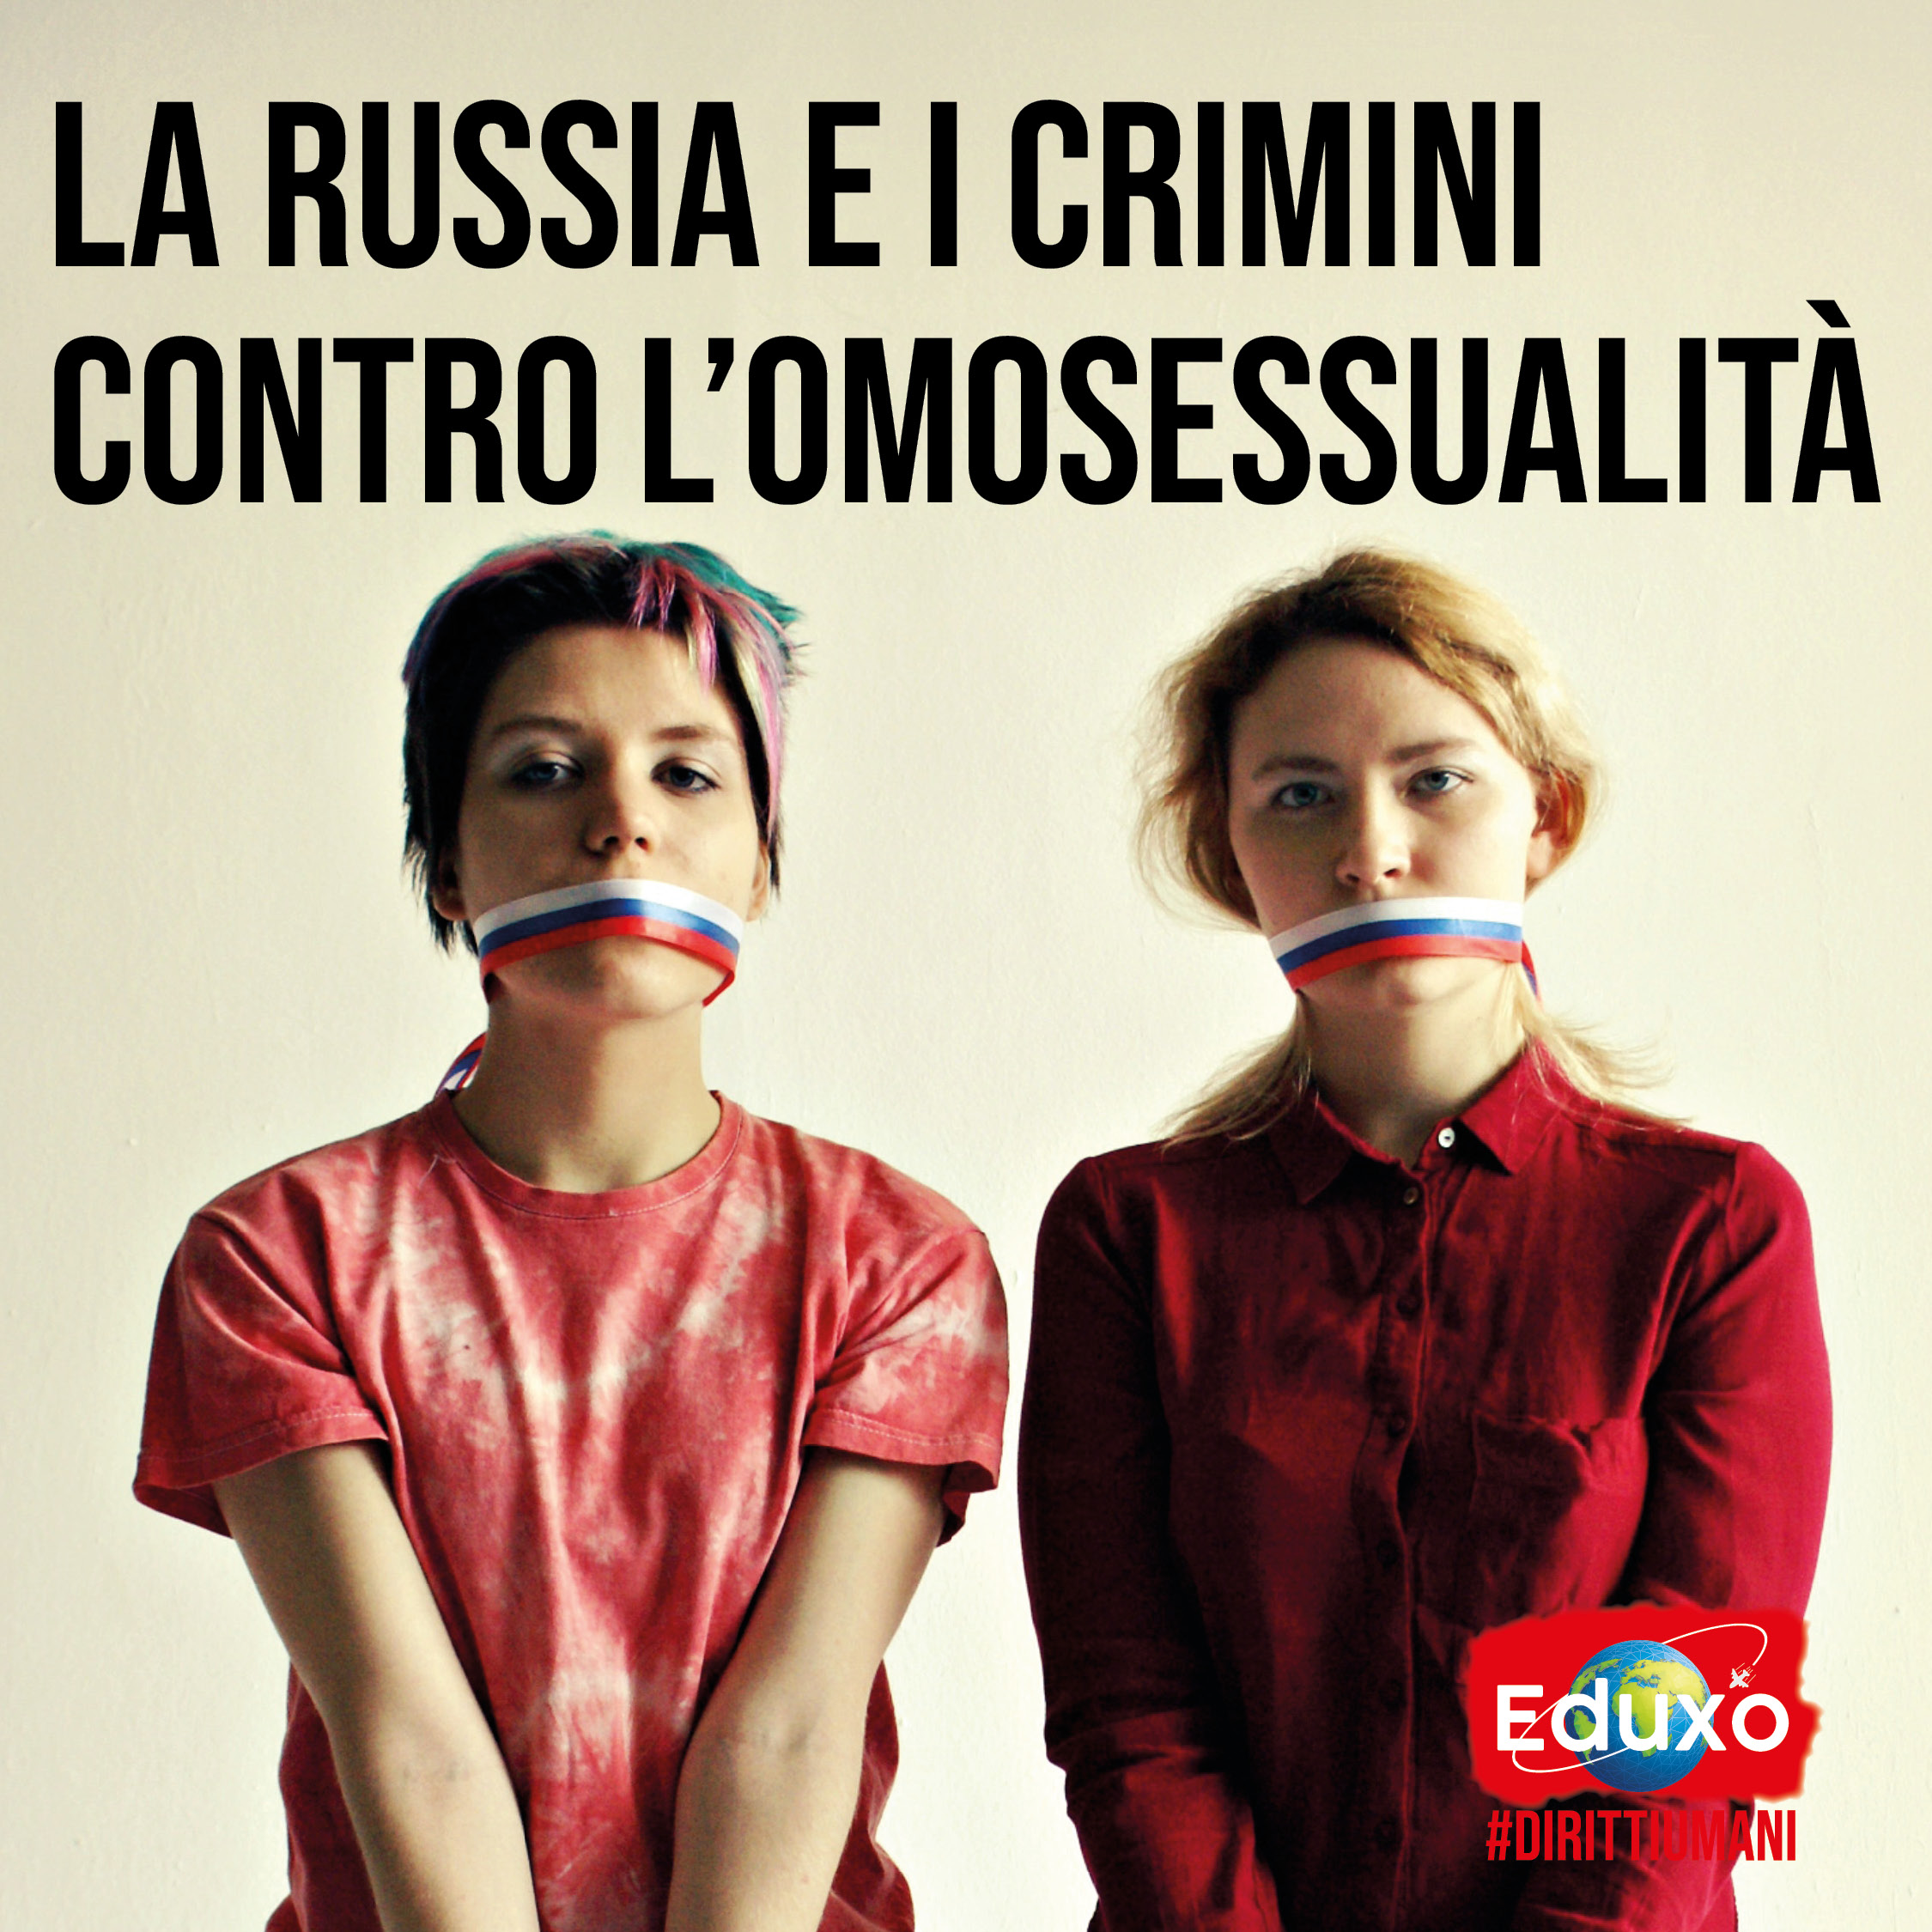 Al momento stai visualizzando La Russia e i crimini contro l’omosessualità